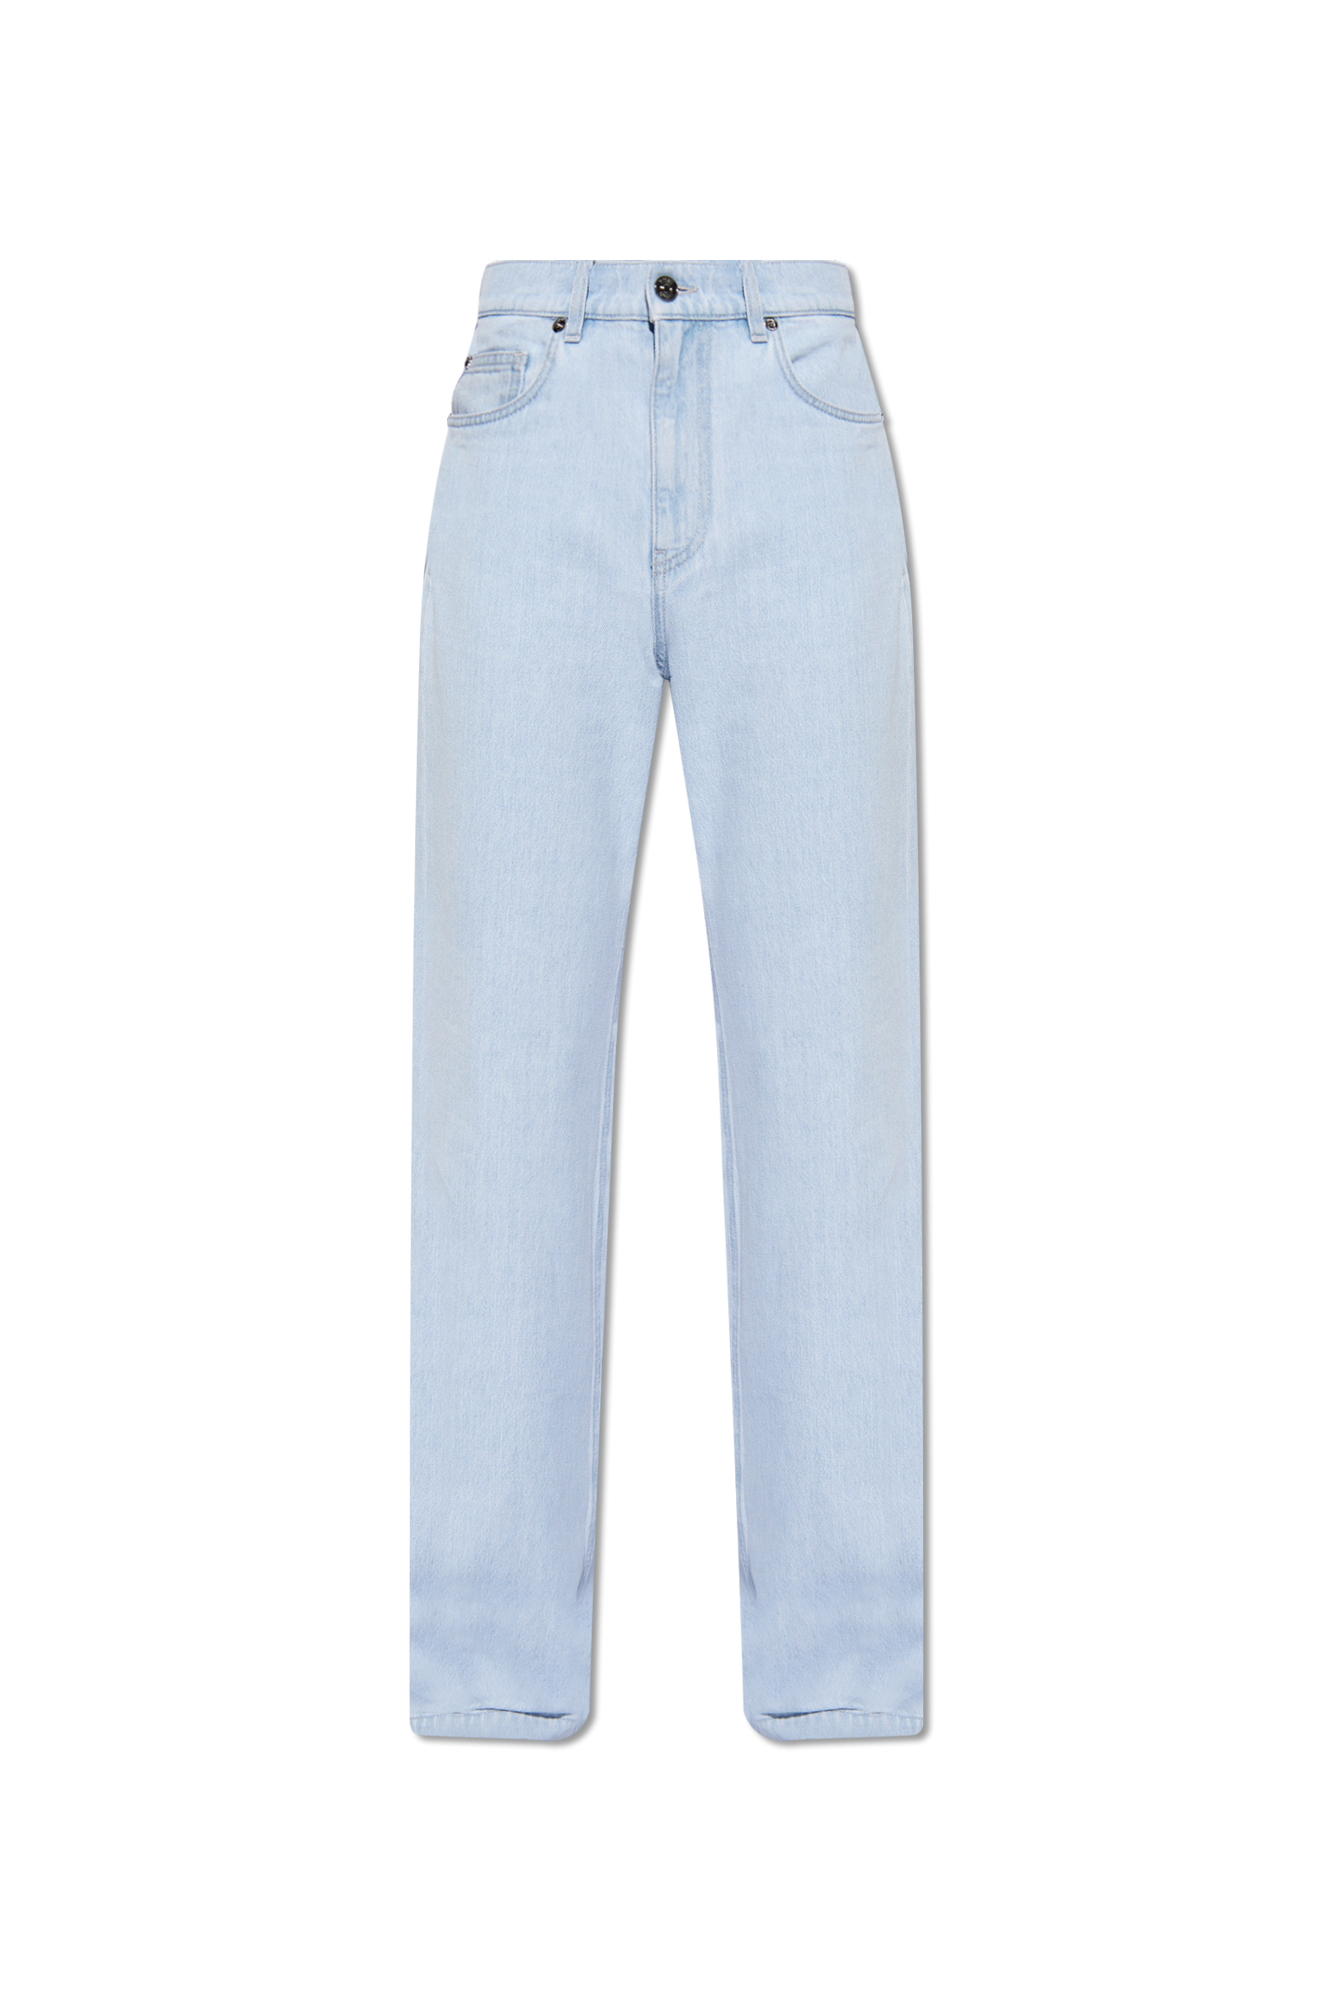 Versace Jeans with Appliqué